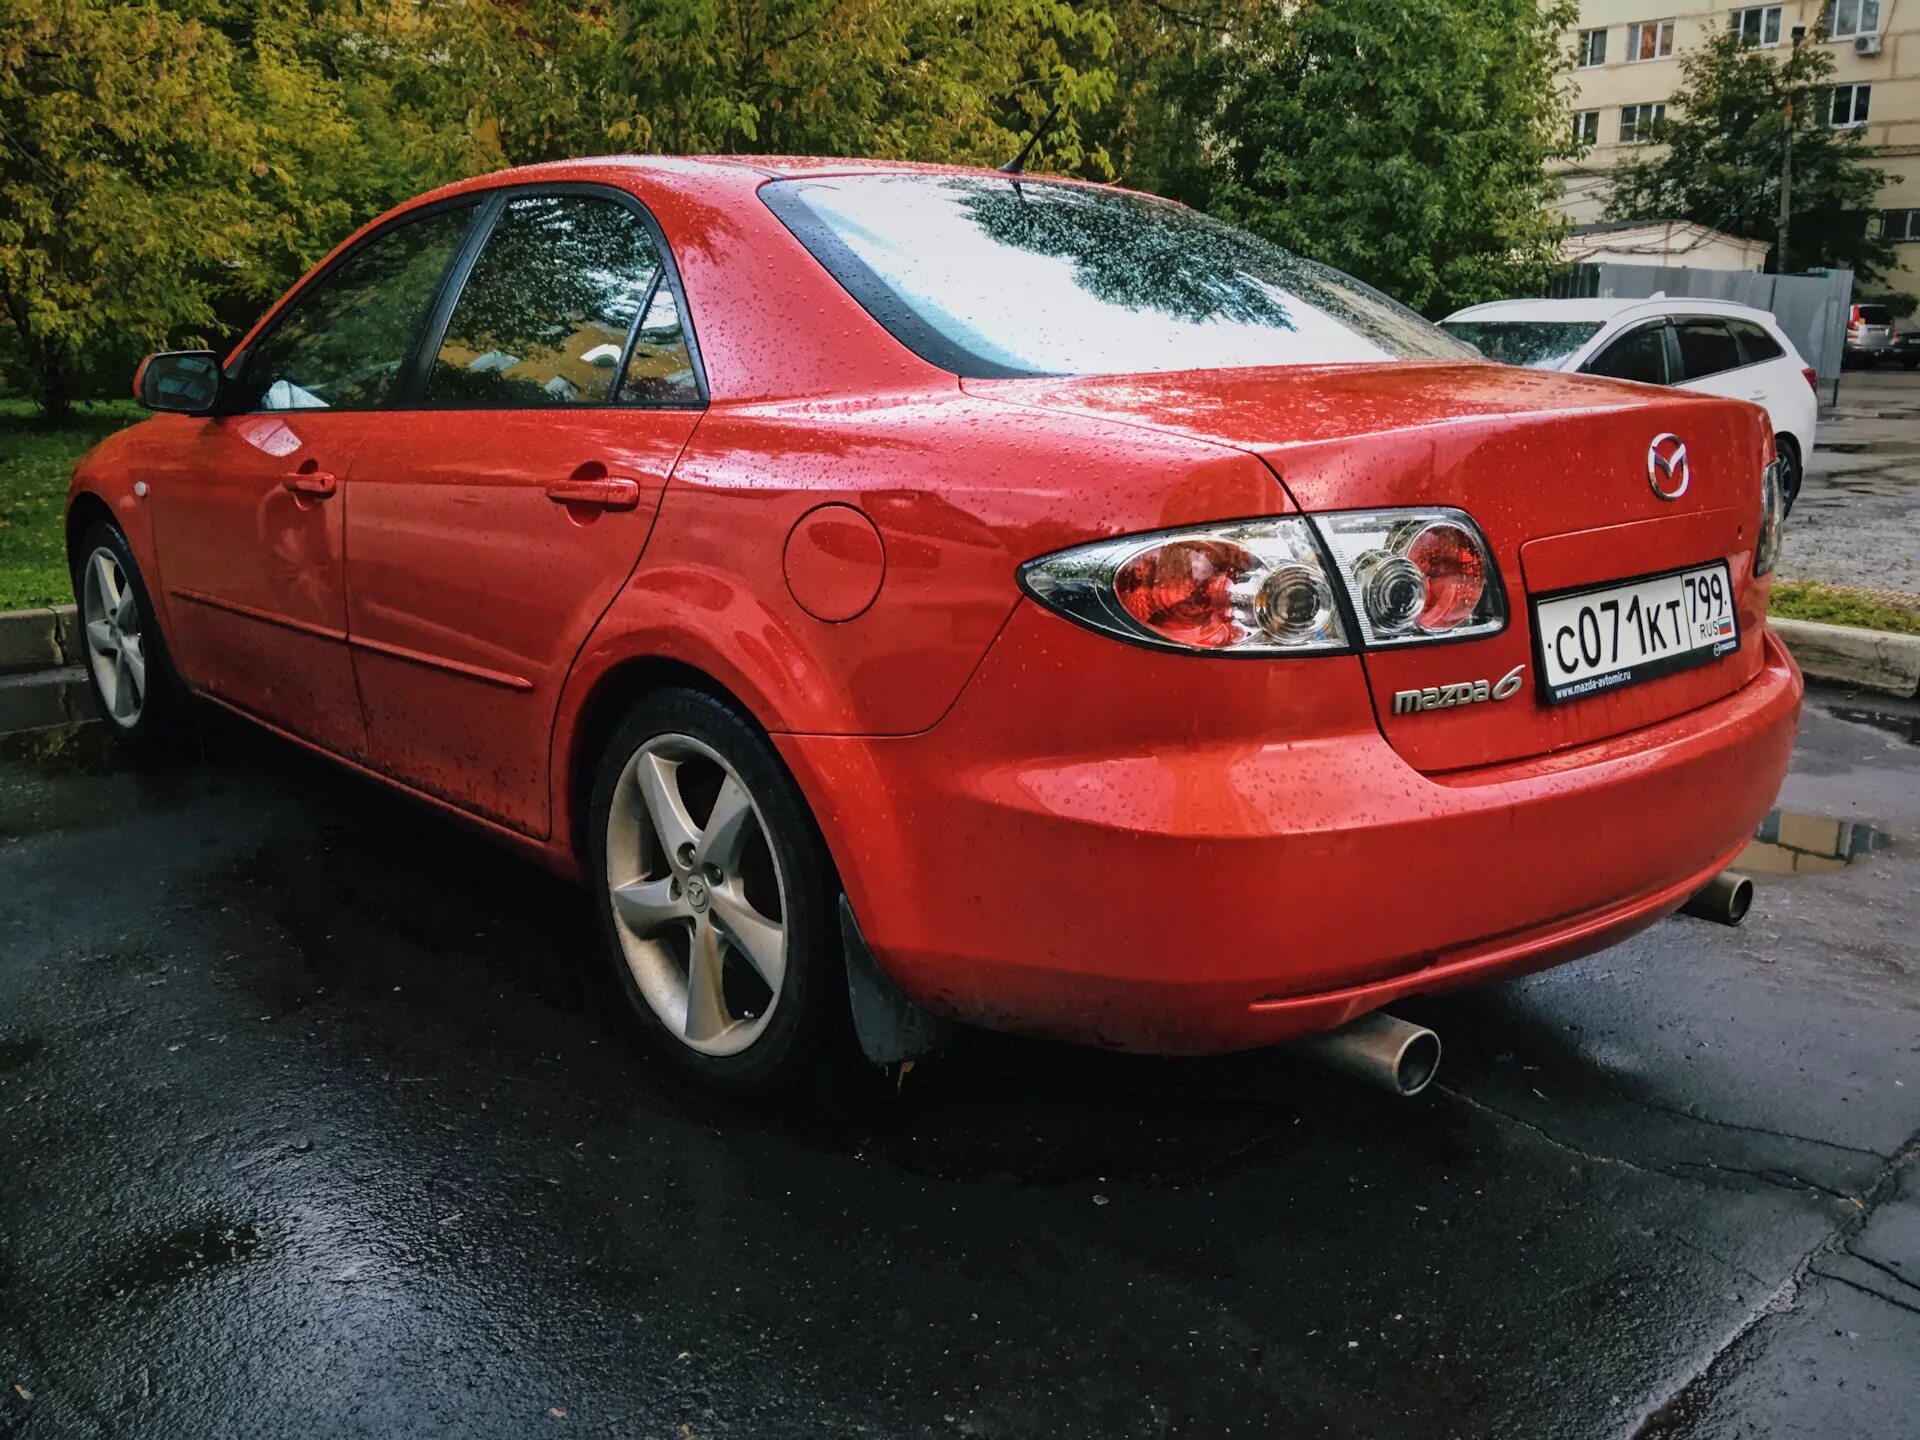 Мазда 6 2006 г. Mazda 6 2006. Мазда 6 gg 2006. Мазда 6 2006 красная. Мазда 6 седан 2006.